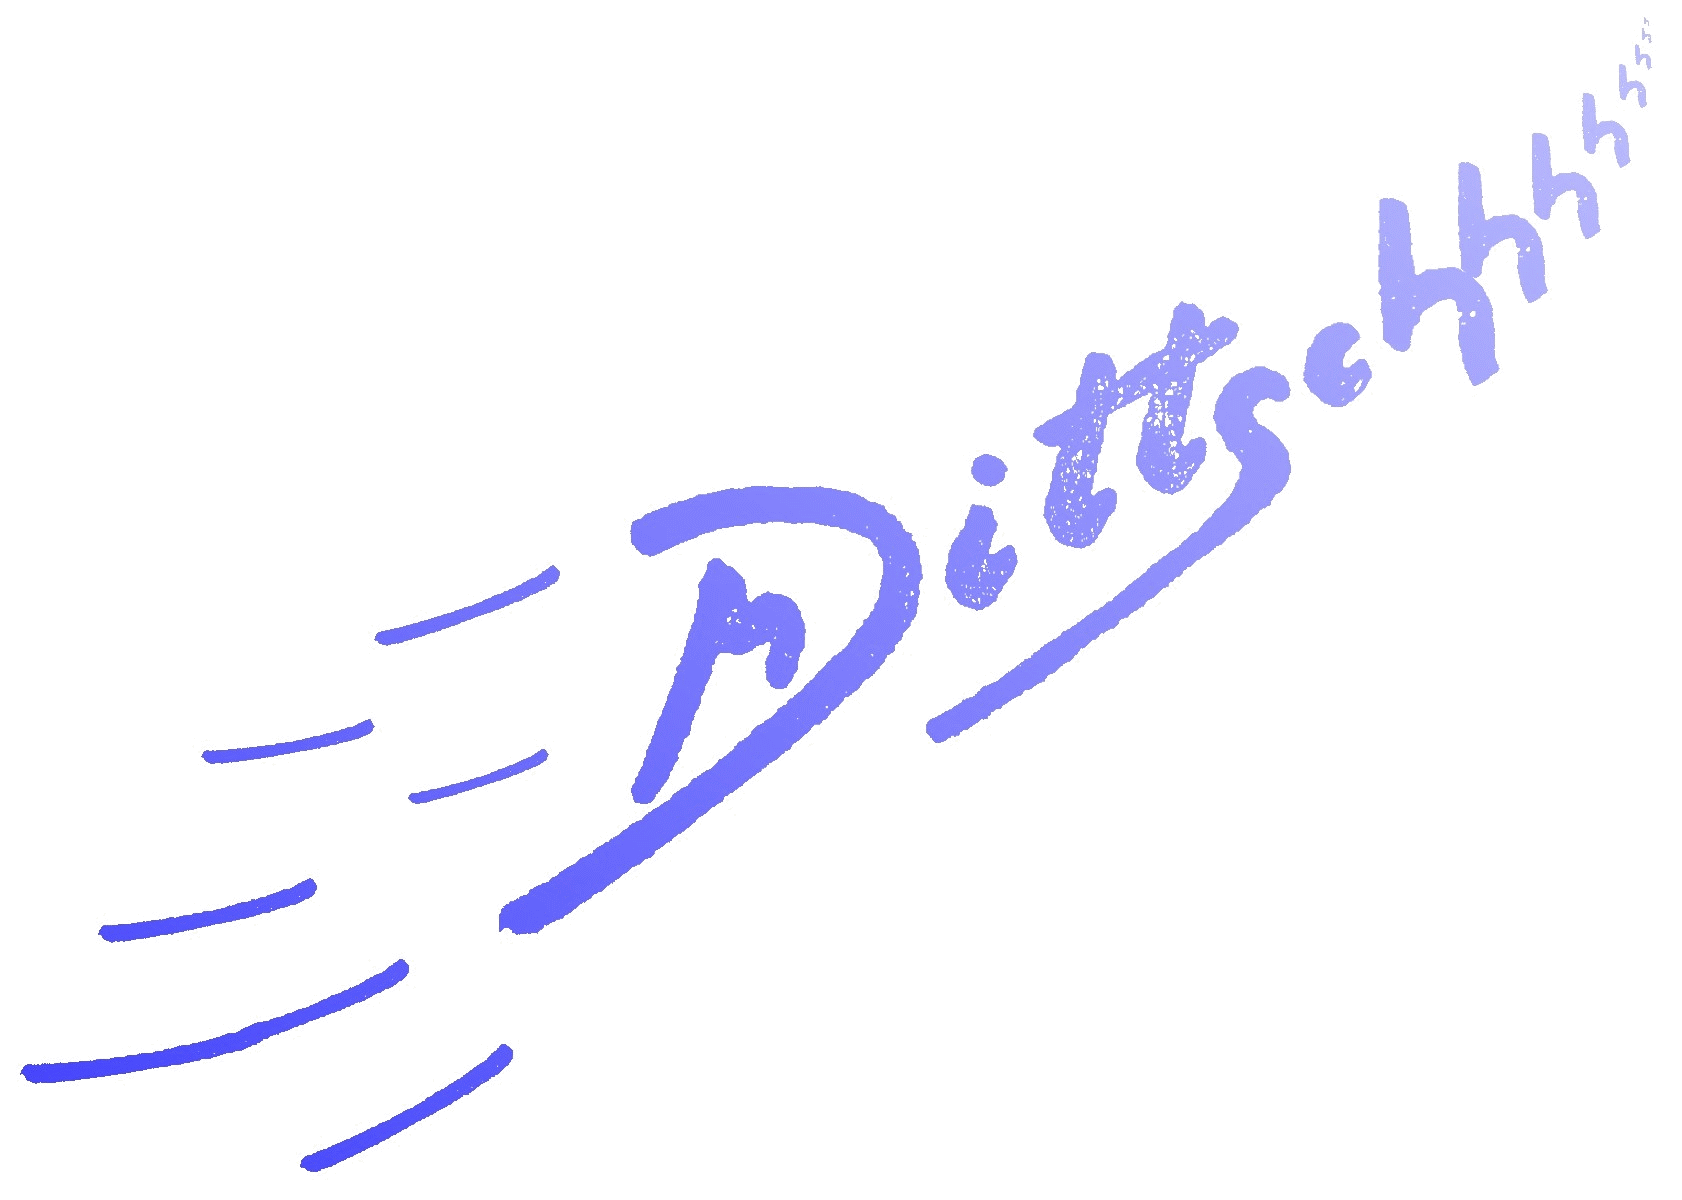 the Dittsch